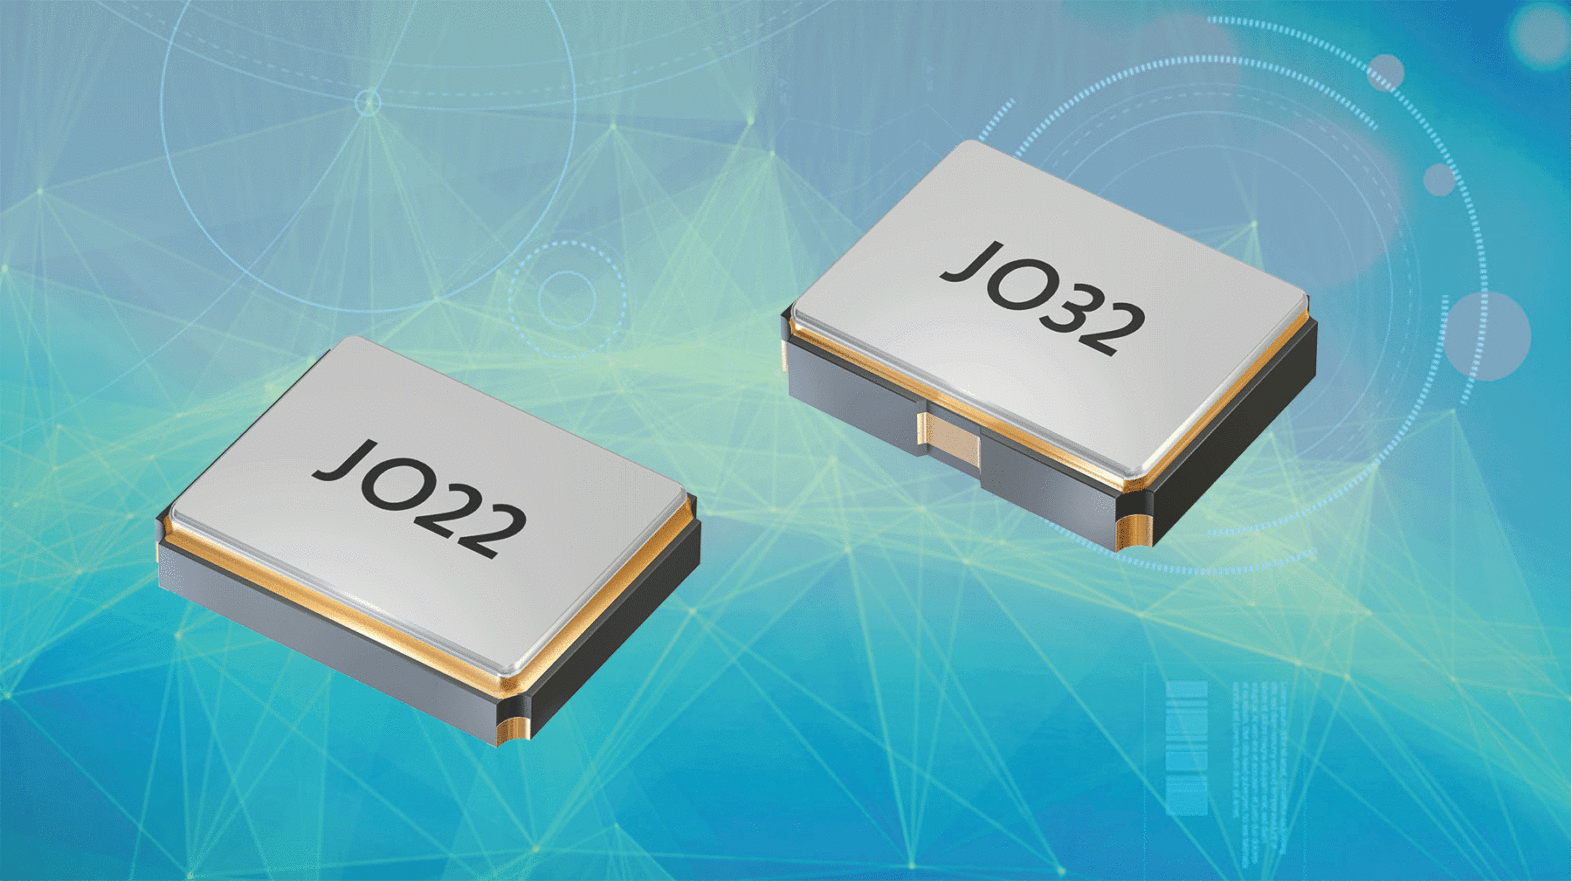 The new crystal oscillators JO22 and JO32